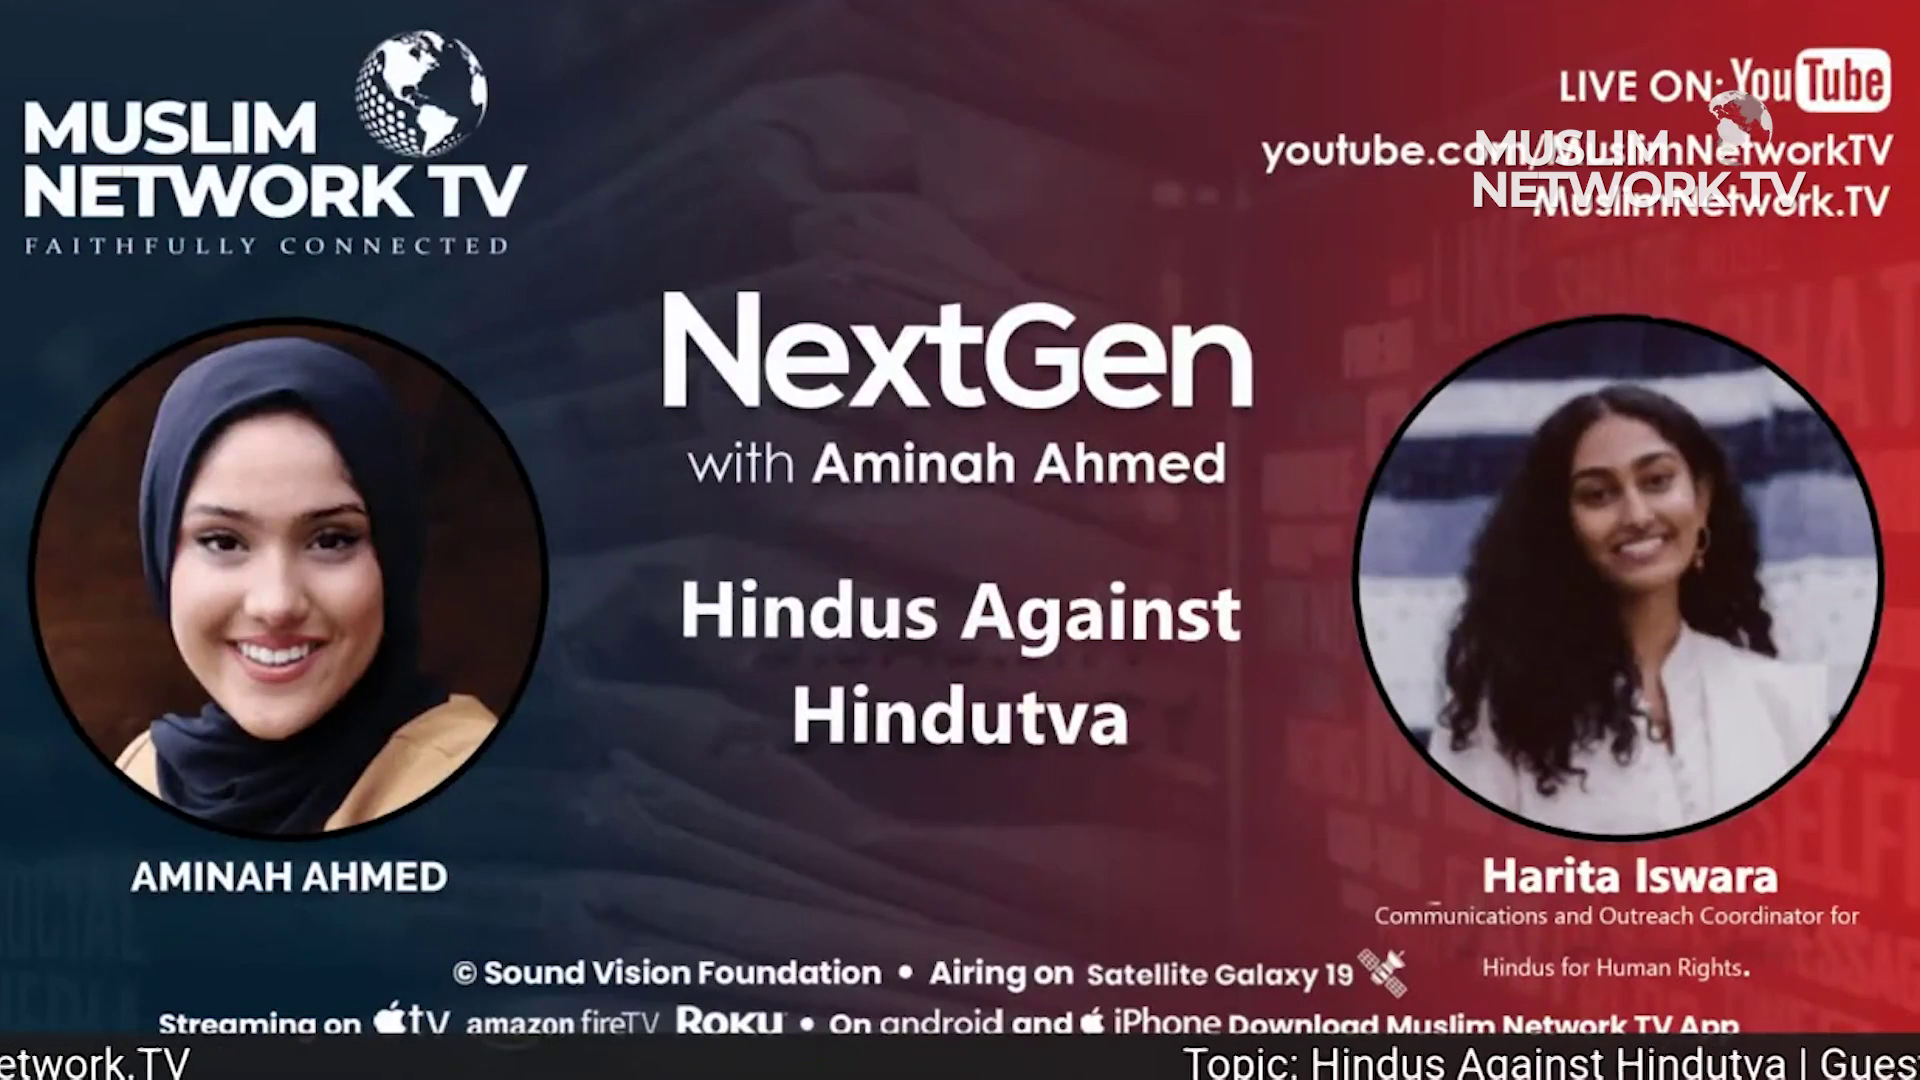 Hindus Against Hindutva